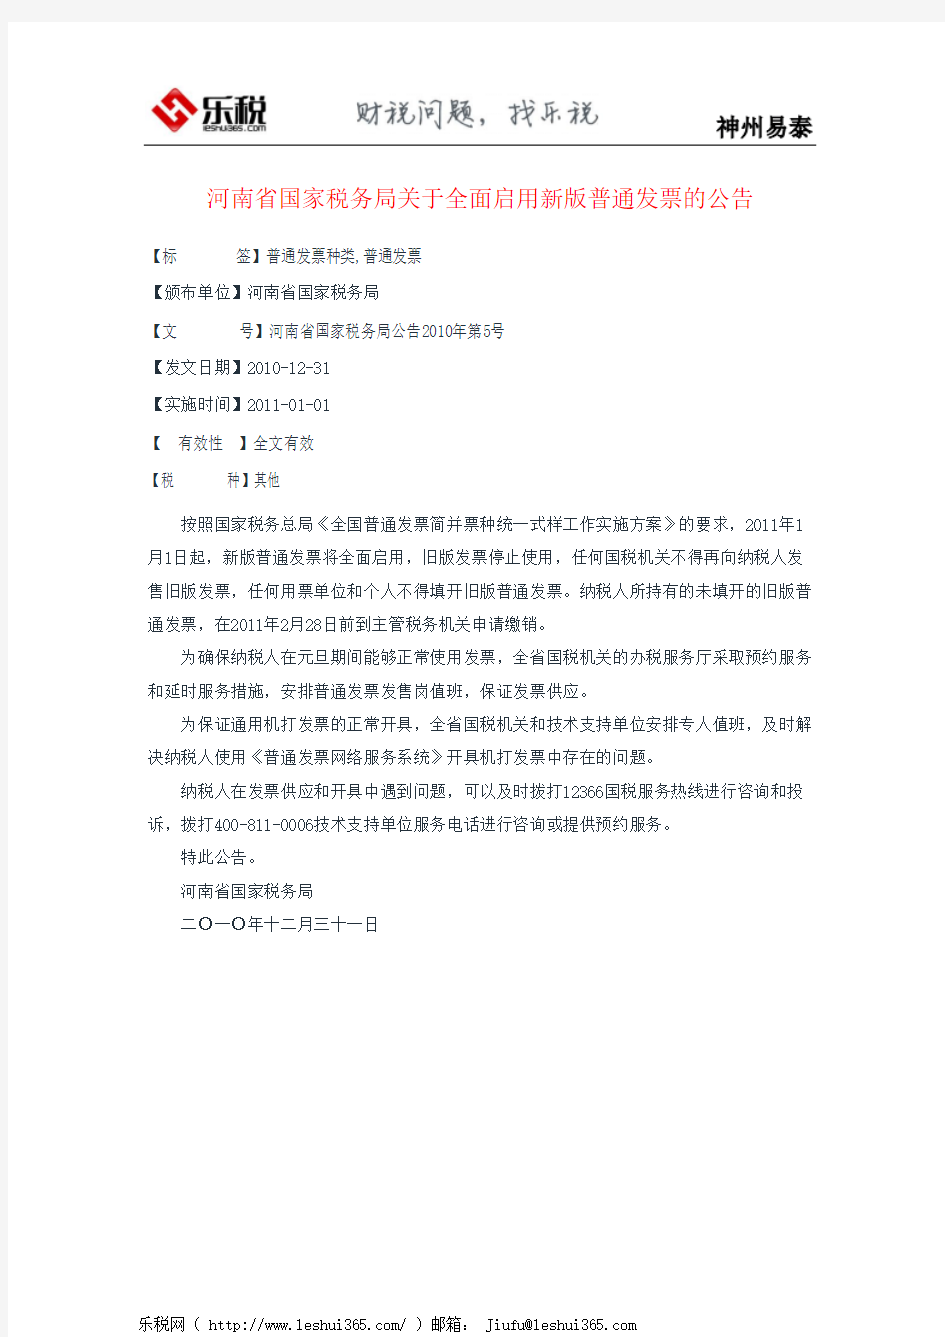 河南省国家税务局关于全面启用新版普通发票的公告